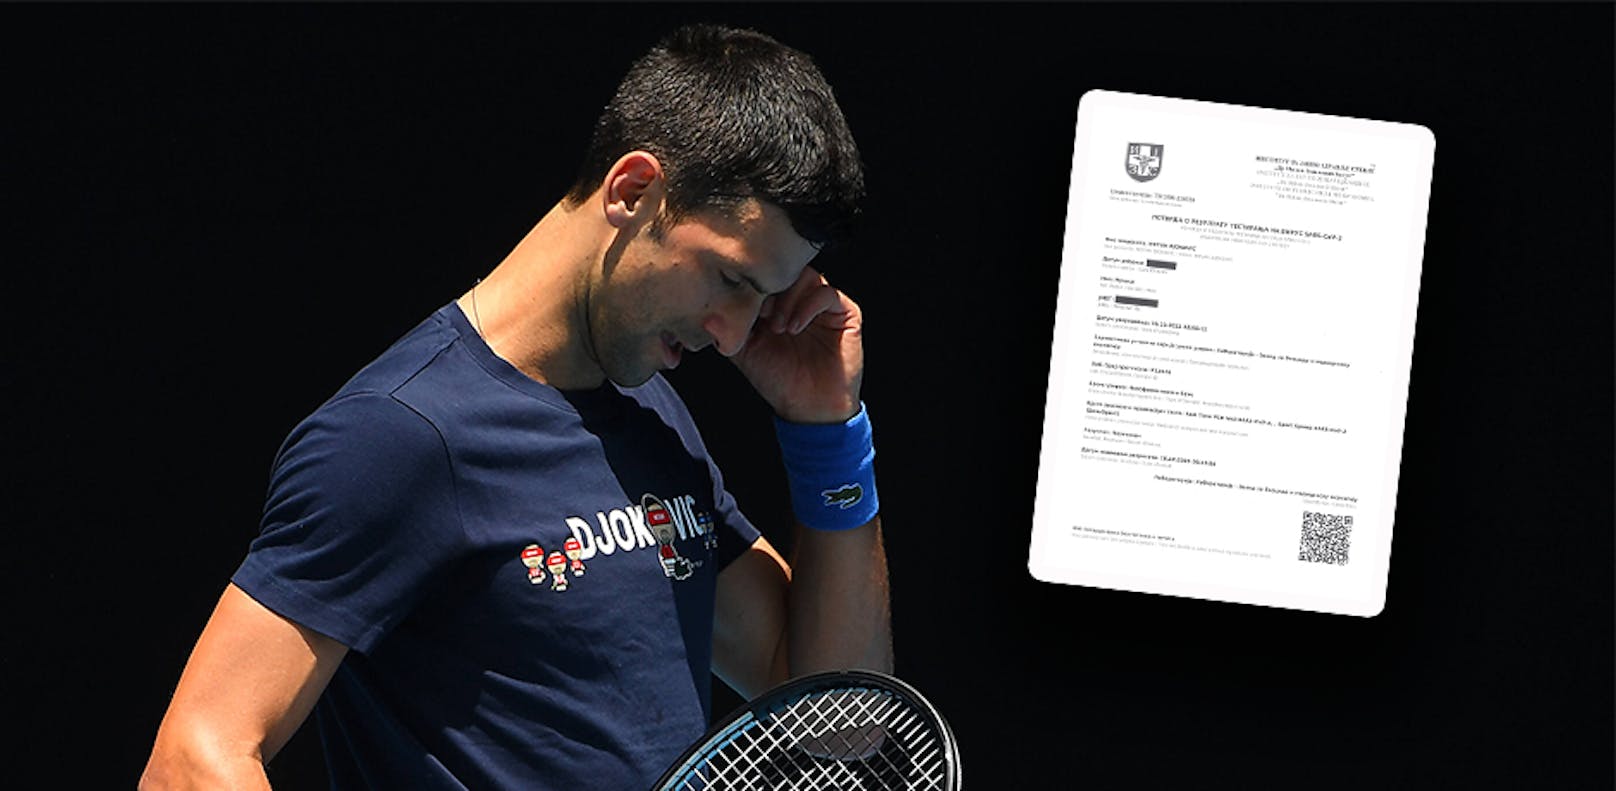 Wann erfuhr Novak Djokovic von seinem Positiv-Test? 